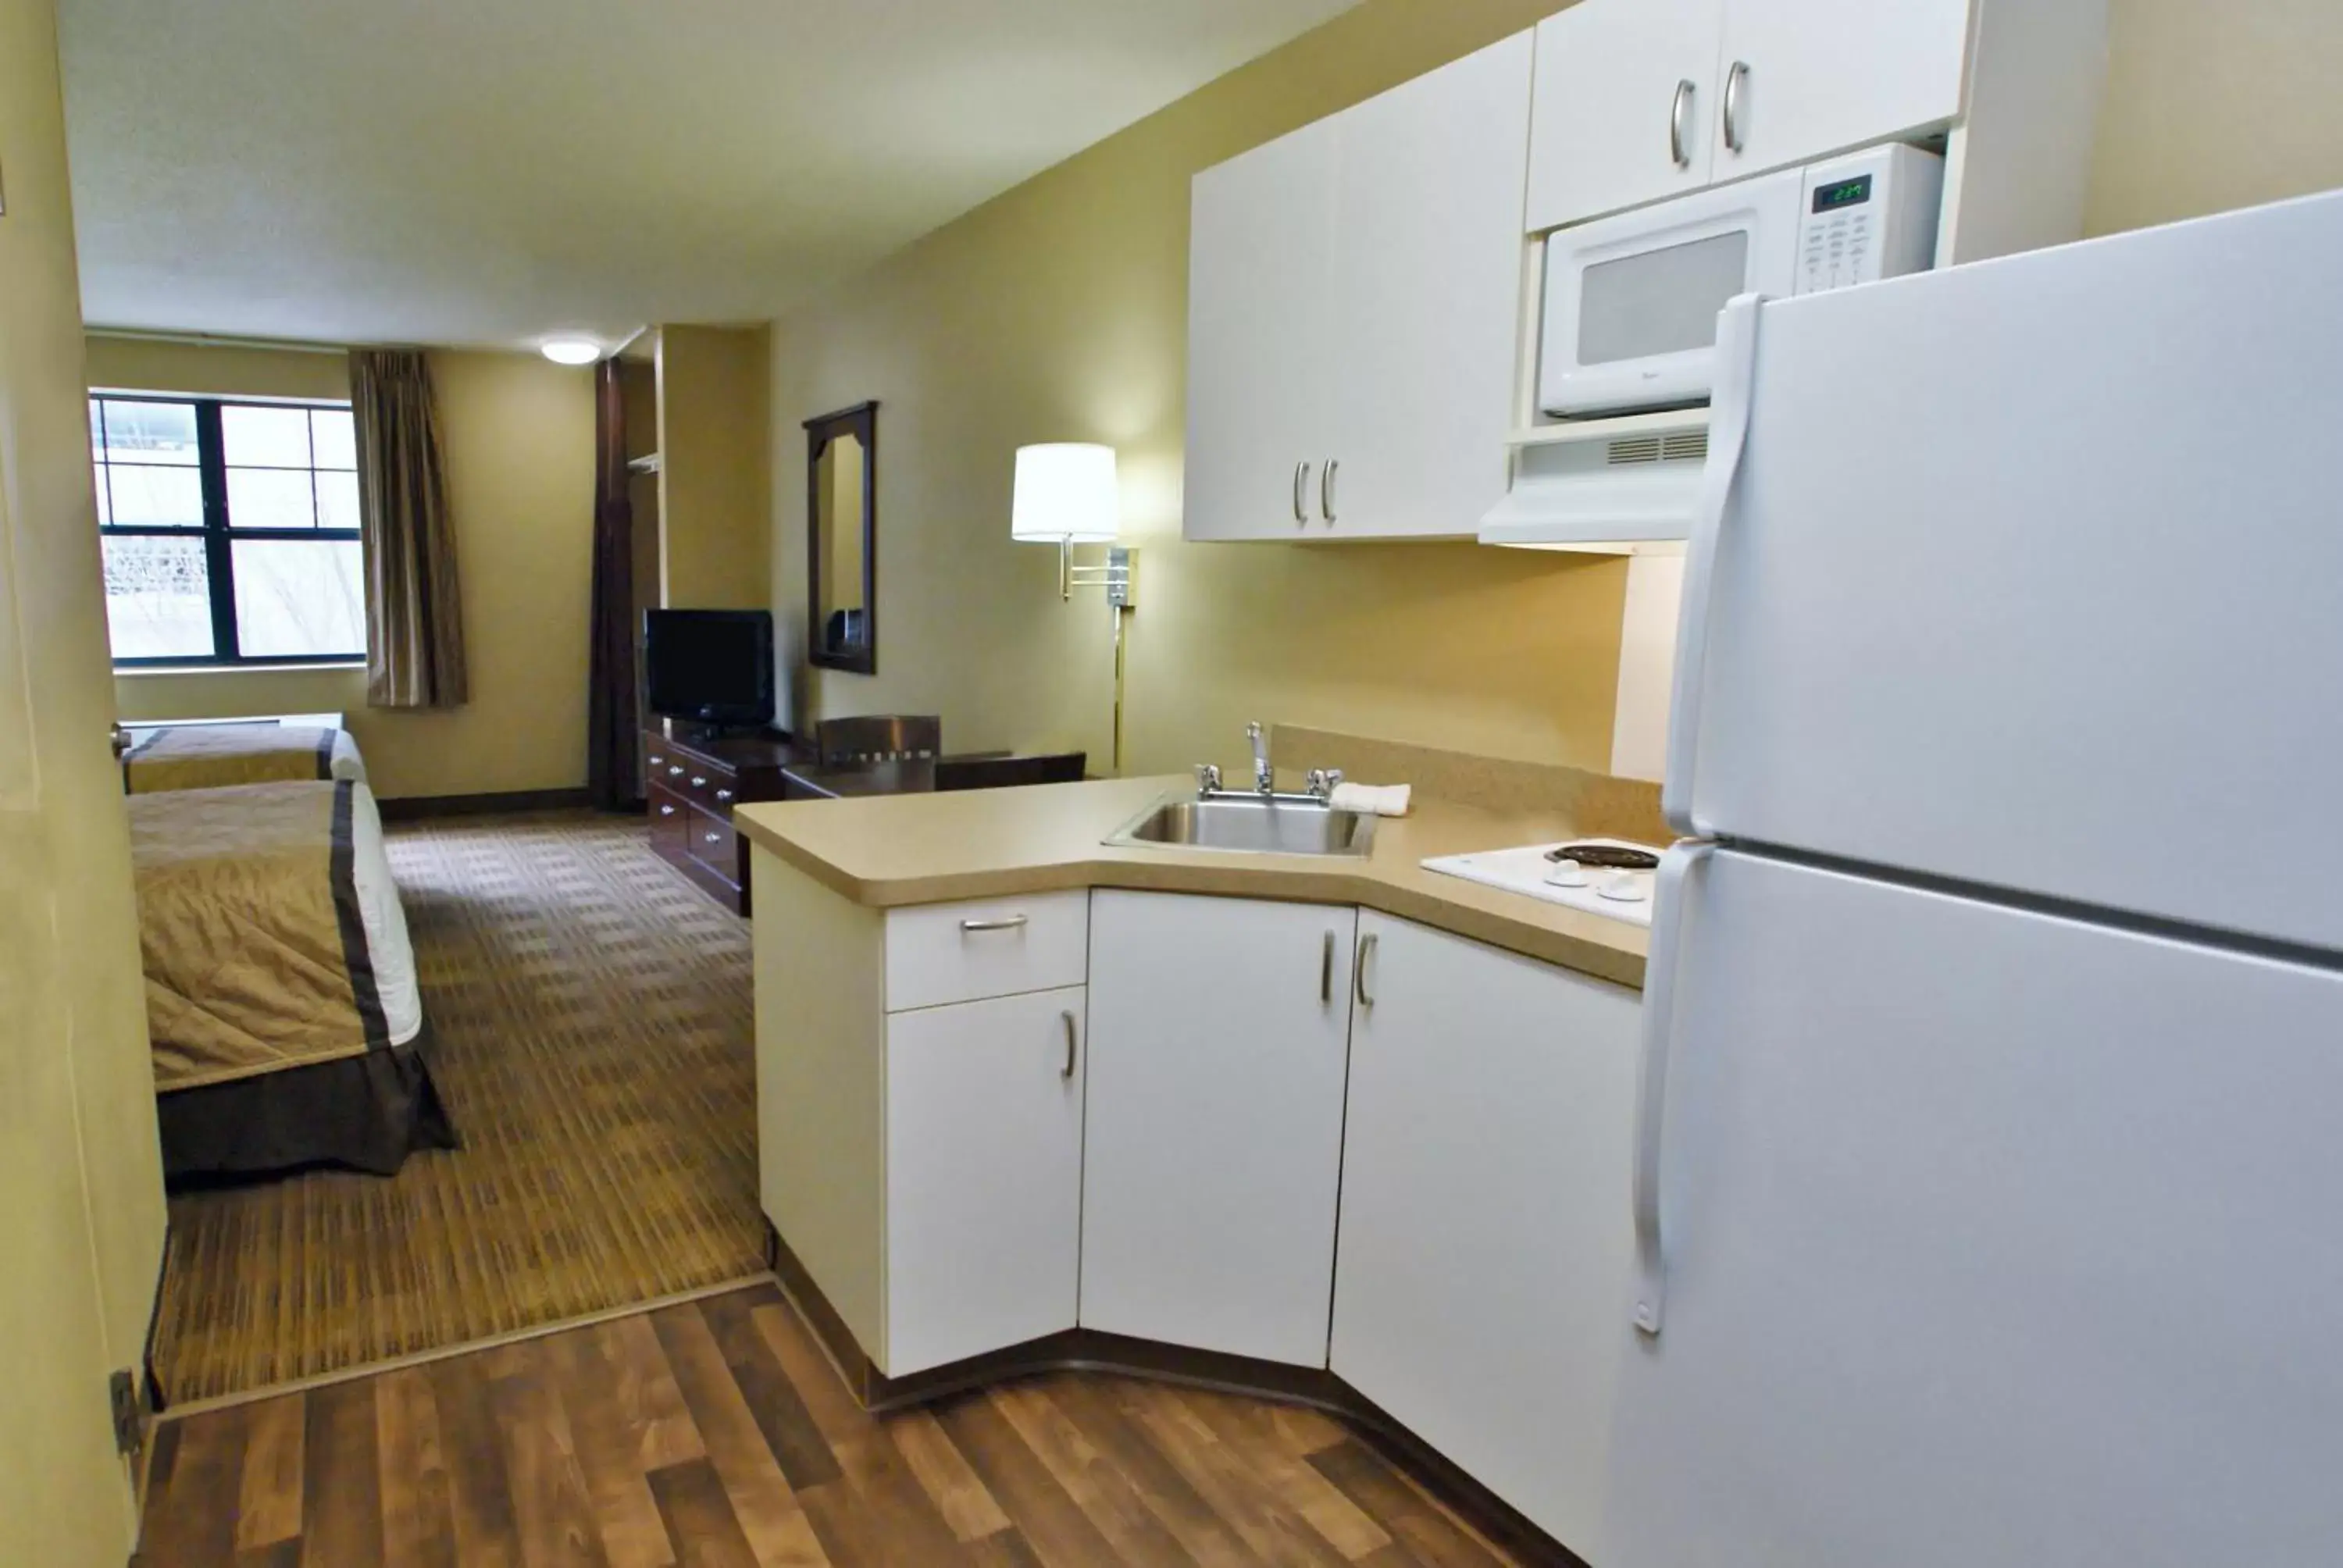 Kitchen or kitchenette, Kitchen/Kitchenette in Extended Stay America Suites - Memphis - Germantown West